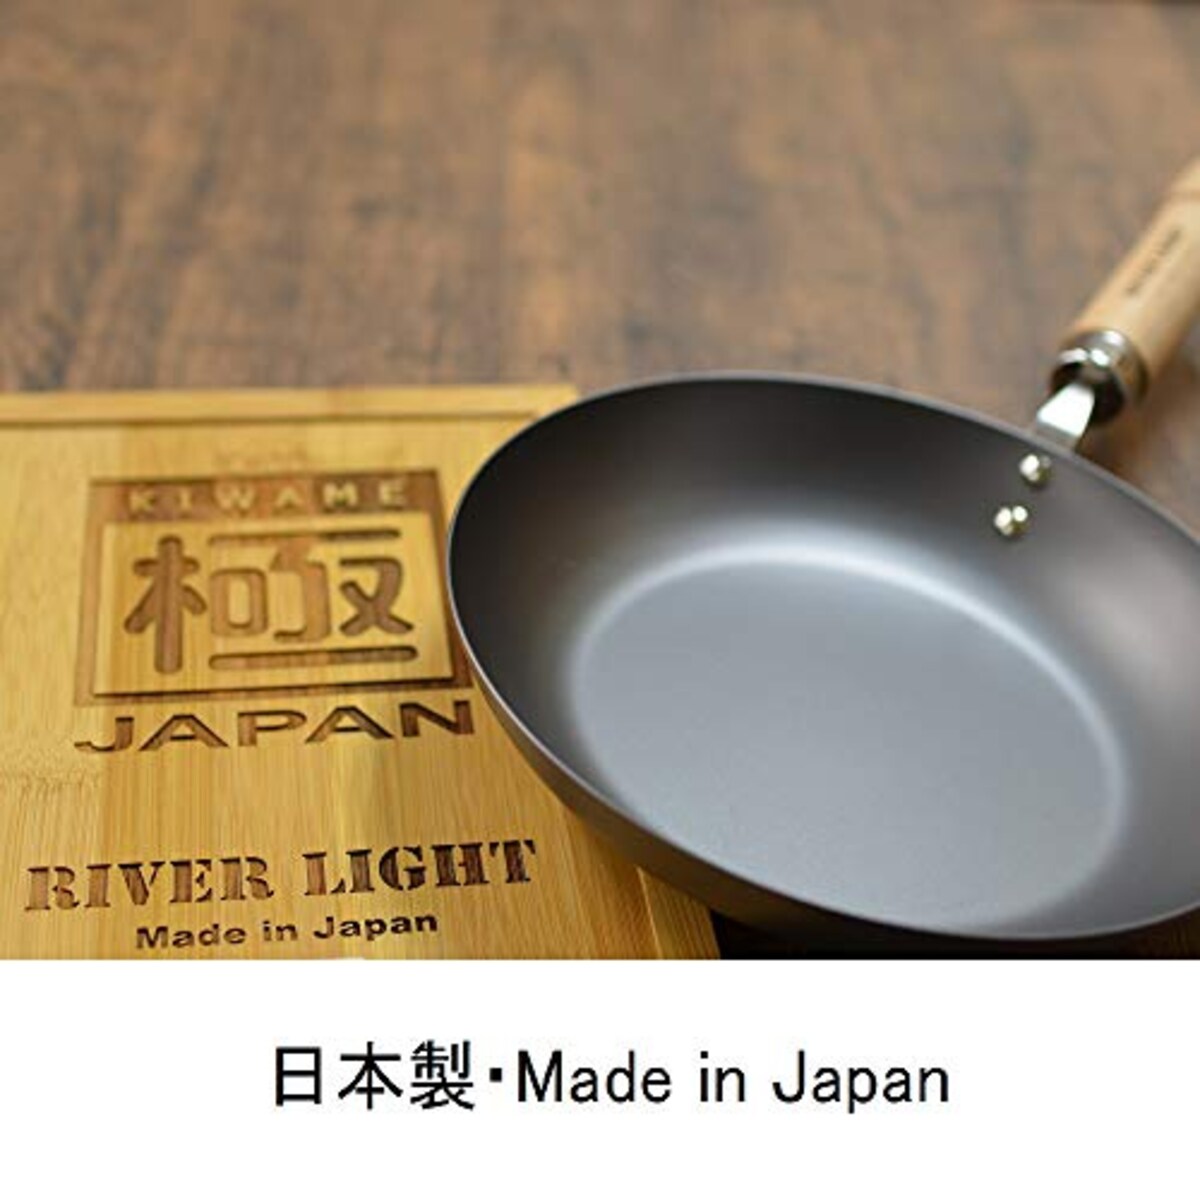  リバーライト 極JAPAN 鉄 フライパン ステーキパン M 窒化鉄 窒化加工 IH対応 サビにくい 日本製 J1929画像5 